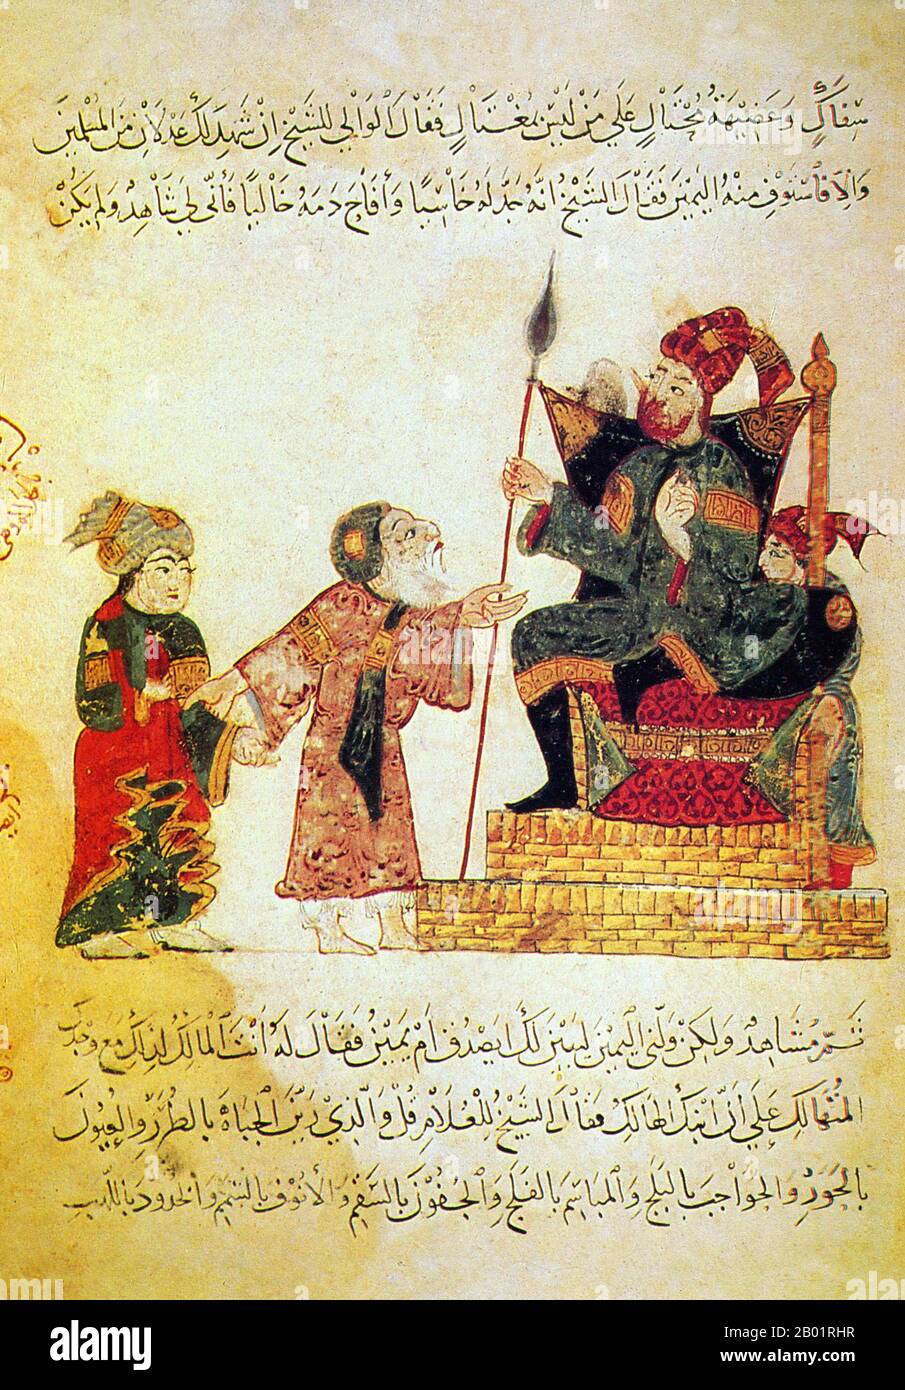 Iraq: Abu Zayd conversava con il governatore di Rahba nello Yemen. Pittura in miniatura di Yahya ibn Mahmud al-Wasiti, 1237 d.C. Yahyâ ibn Mahmûd al-Wâsitî è stato un artista arabo islamico del XIII secolo. Al-Wasiti è nato a Wasit, nel sud dell'Iraq. Era noto per le sue illustrazioni del Maqam di al-Hariri. I Maqāma (letteralmente "assemblee") sono un genere letterario arabo (originariamente) di prosa rimata con intervalli di poesia in cui la stravaganza retorica è evidente. Si dice che l'autore del X secolo Badī' al-Zaman al-Hamadhāni abbia inventato la forma, che fu estesa da al-Hariri di Bassora. Foto Stock